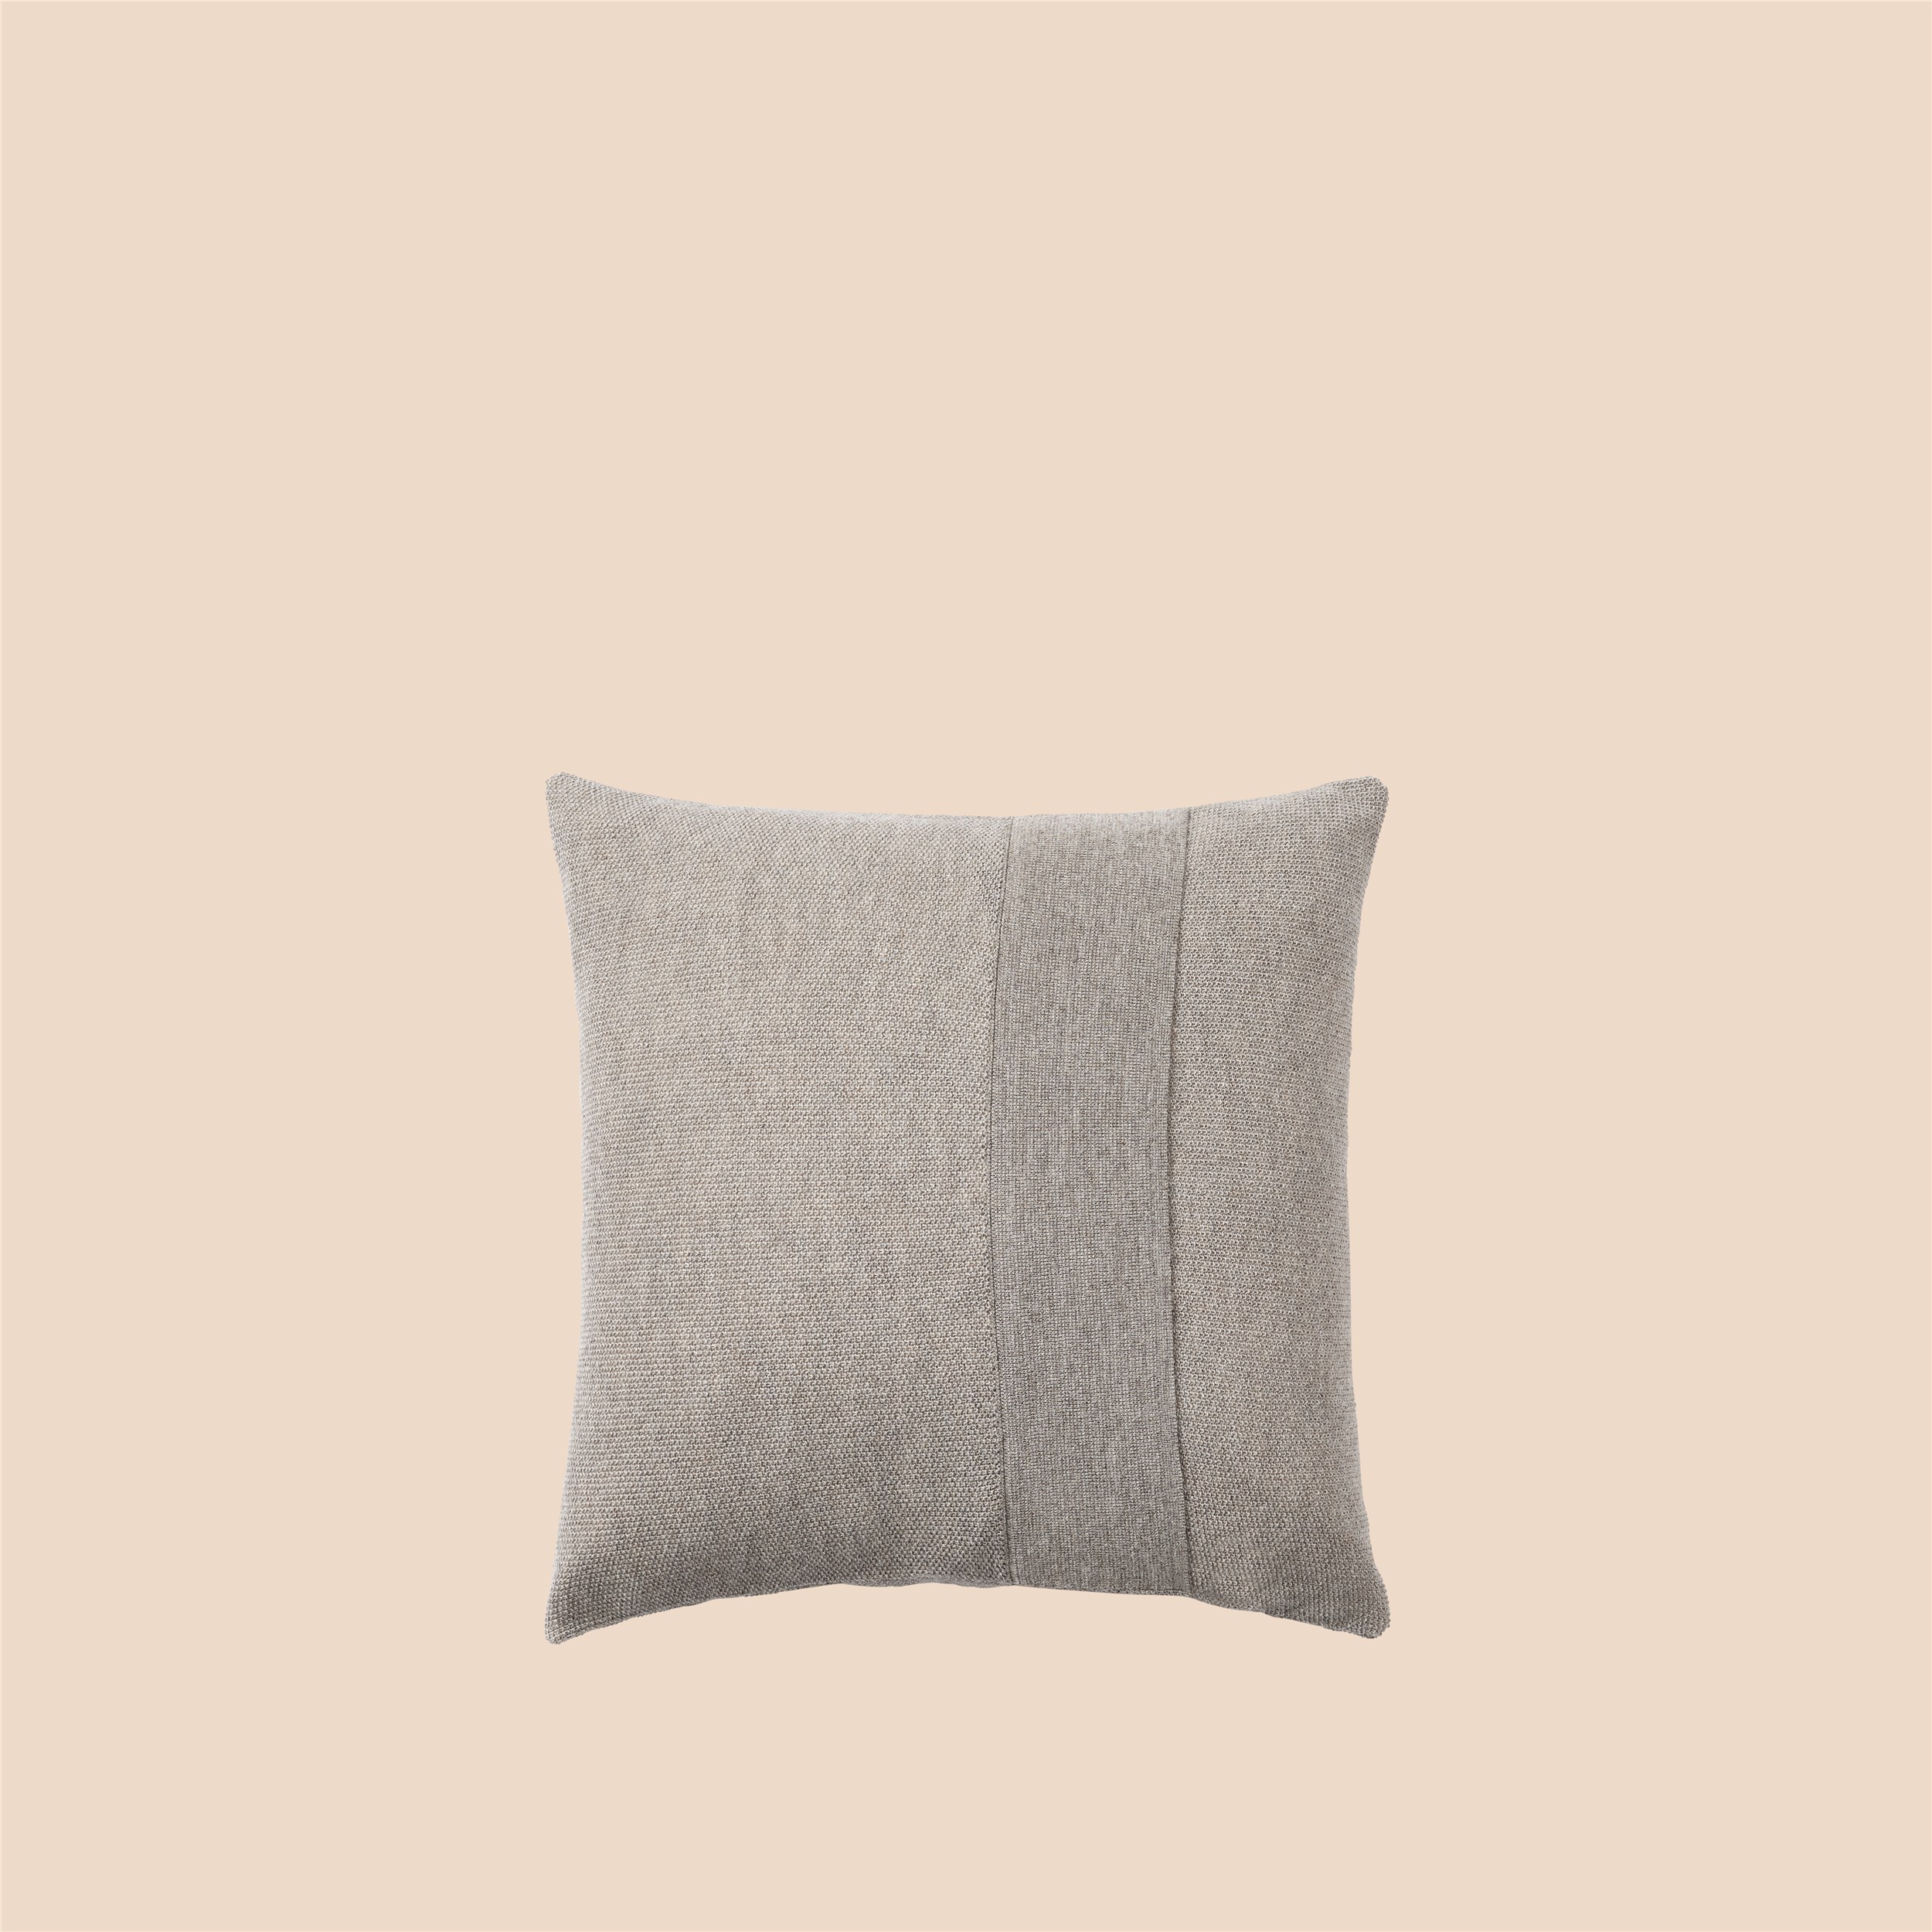 Layer Cushion 50x50 sand grey